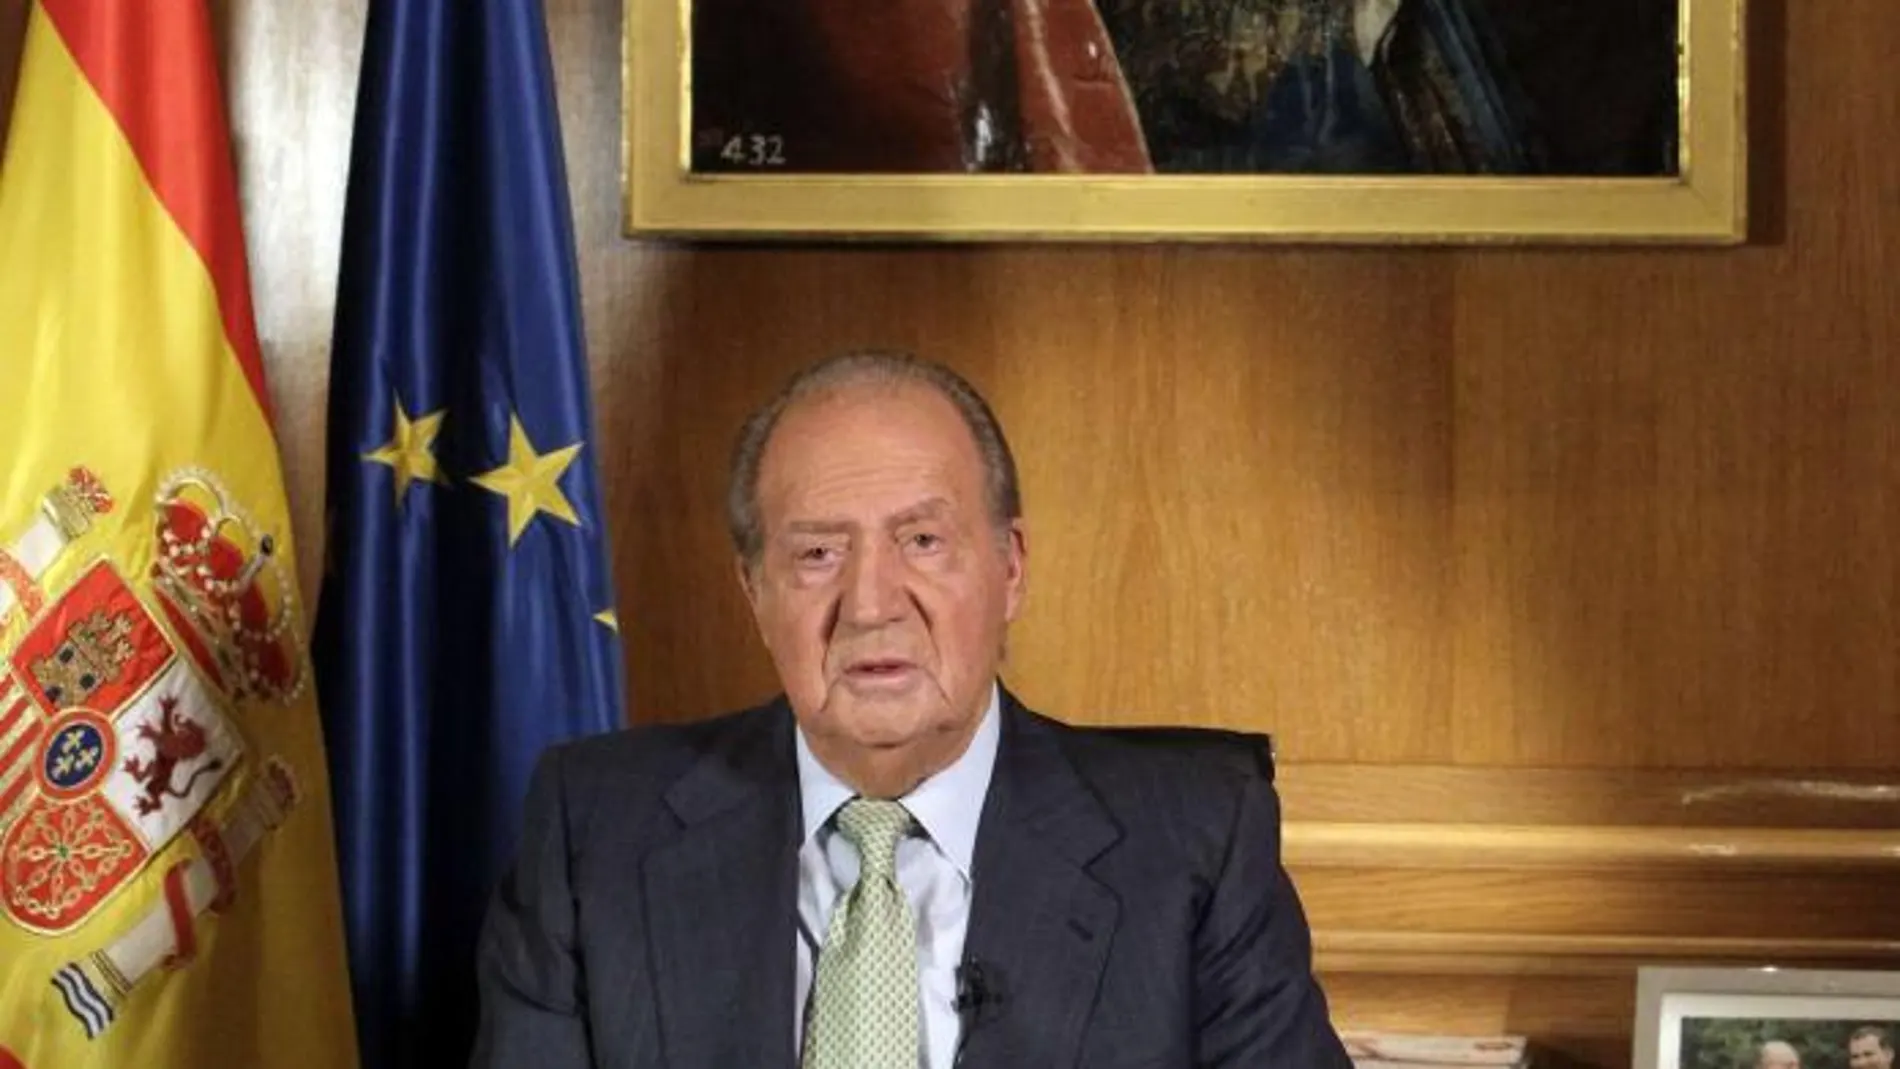 El Monarca pronuncia su mensaje de abdicación desde su despacho en el Palacio de la Zarzuela el 2 de junio de 2014.